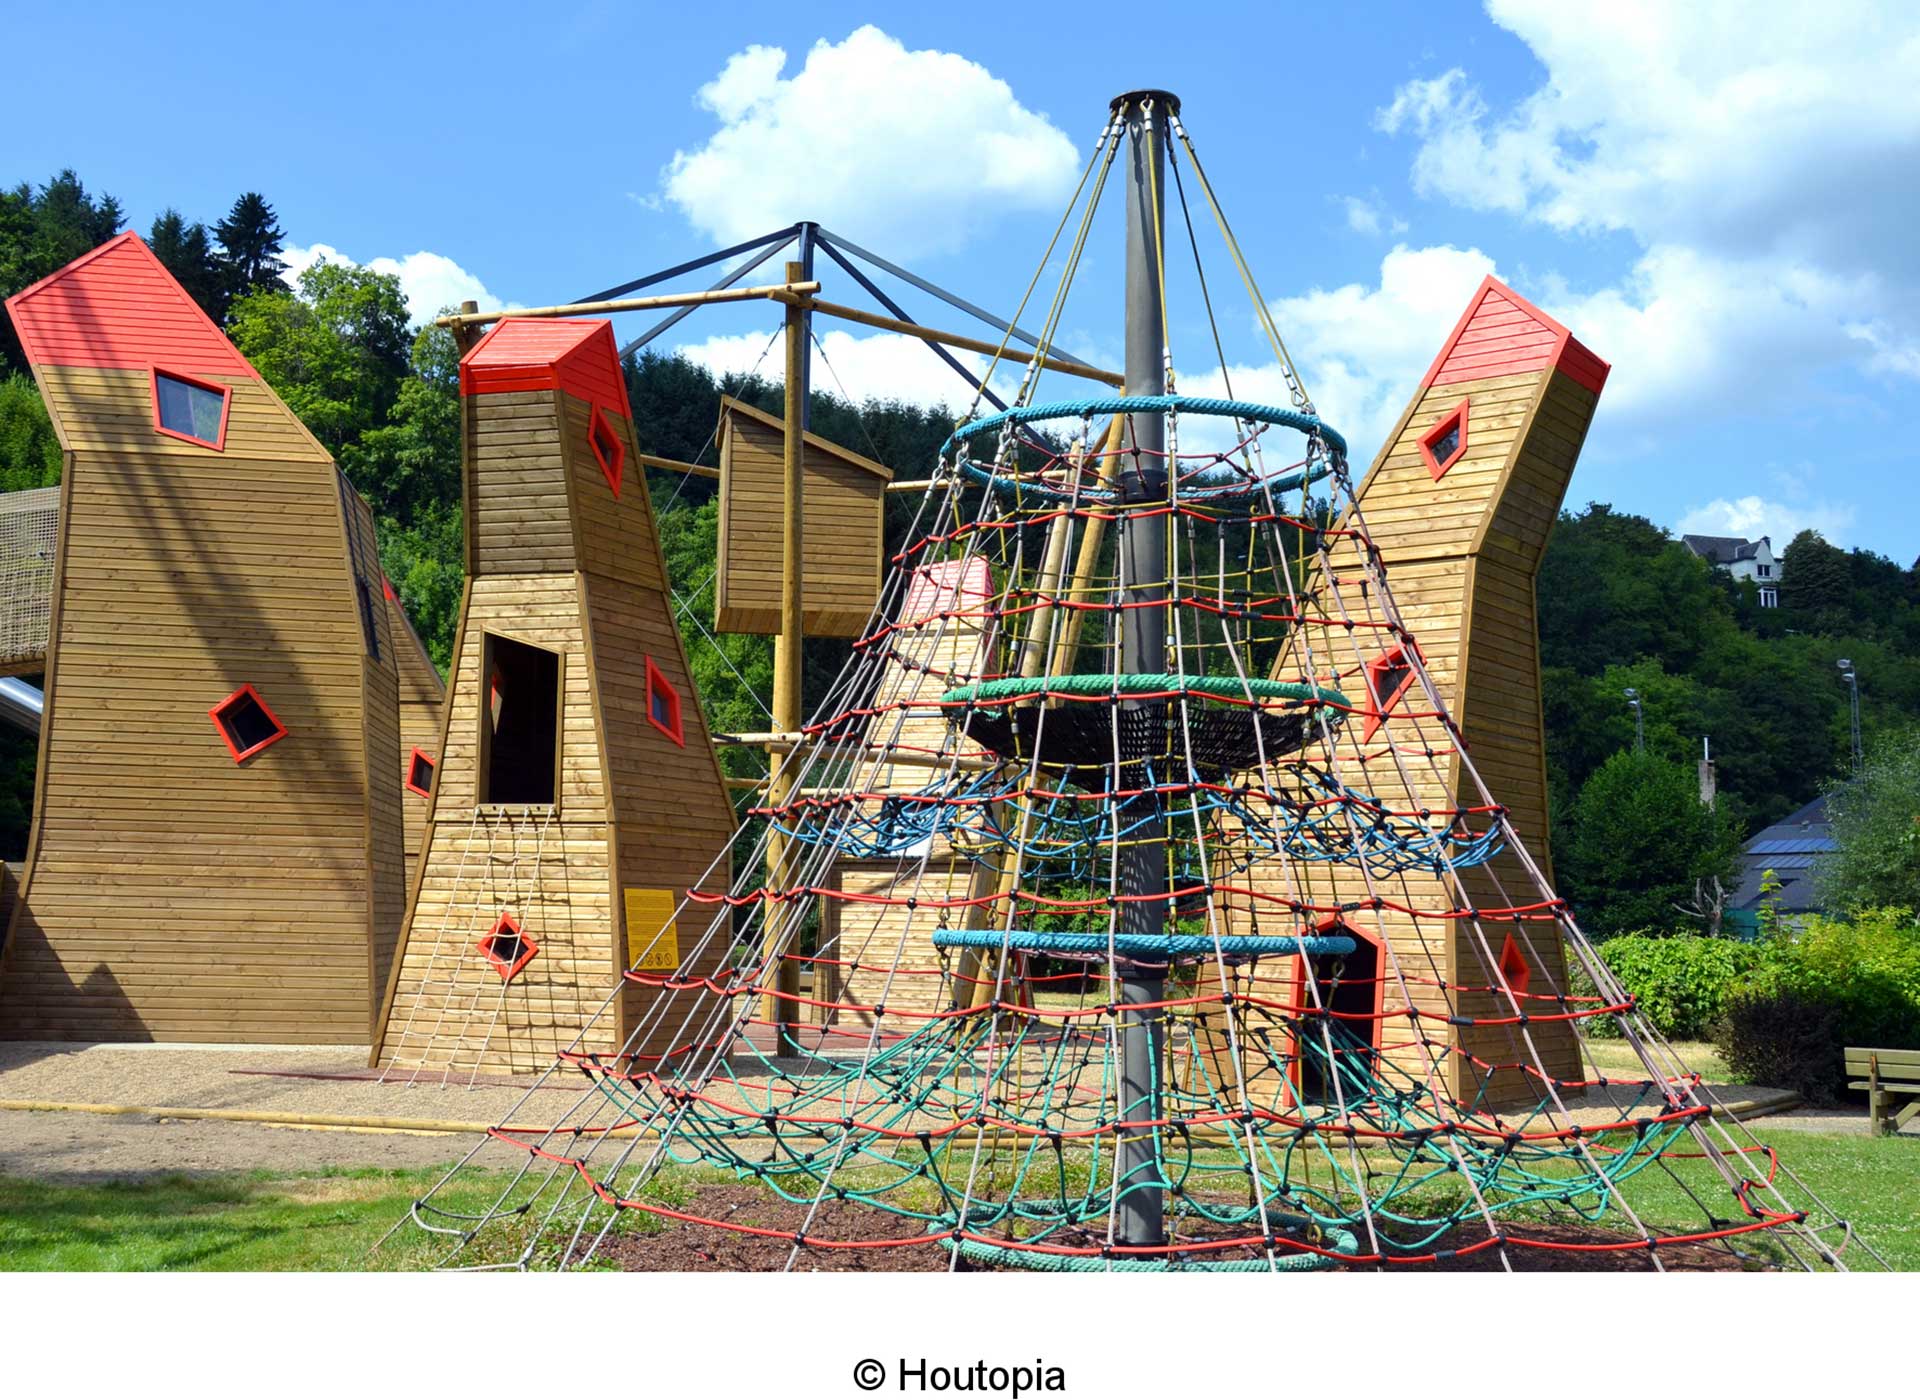 Découvrez Houtopia, un parc récréatif de découvertes et de sensibilisation aux droits de nos enfants à Houffalize